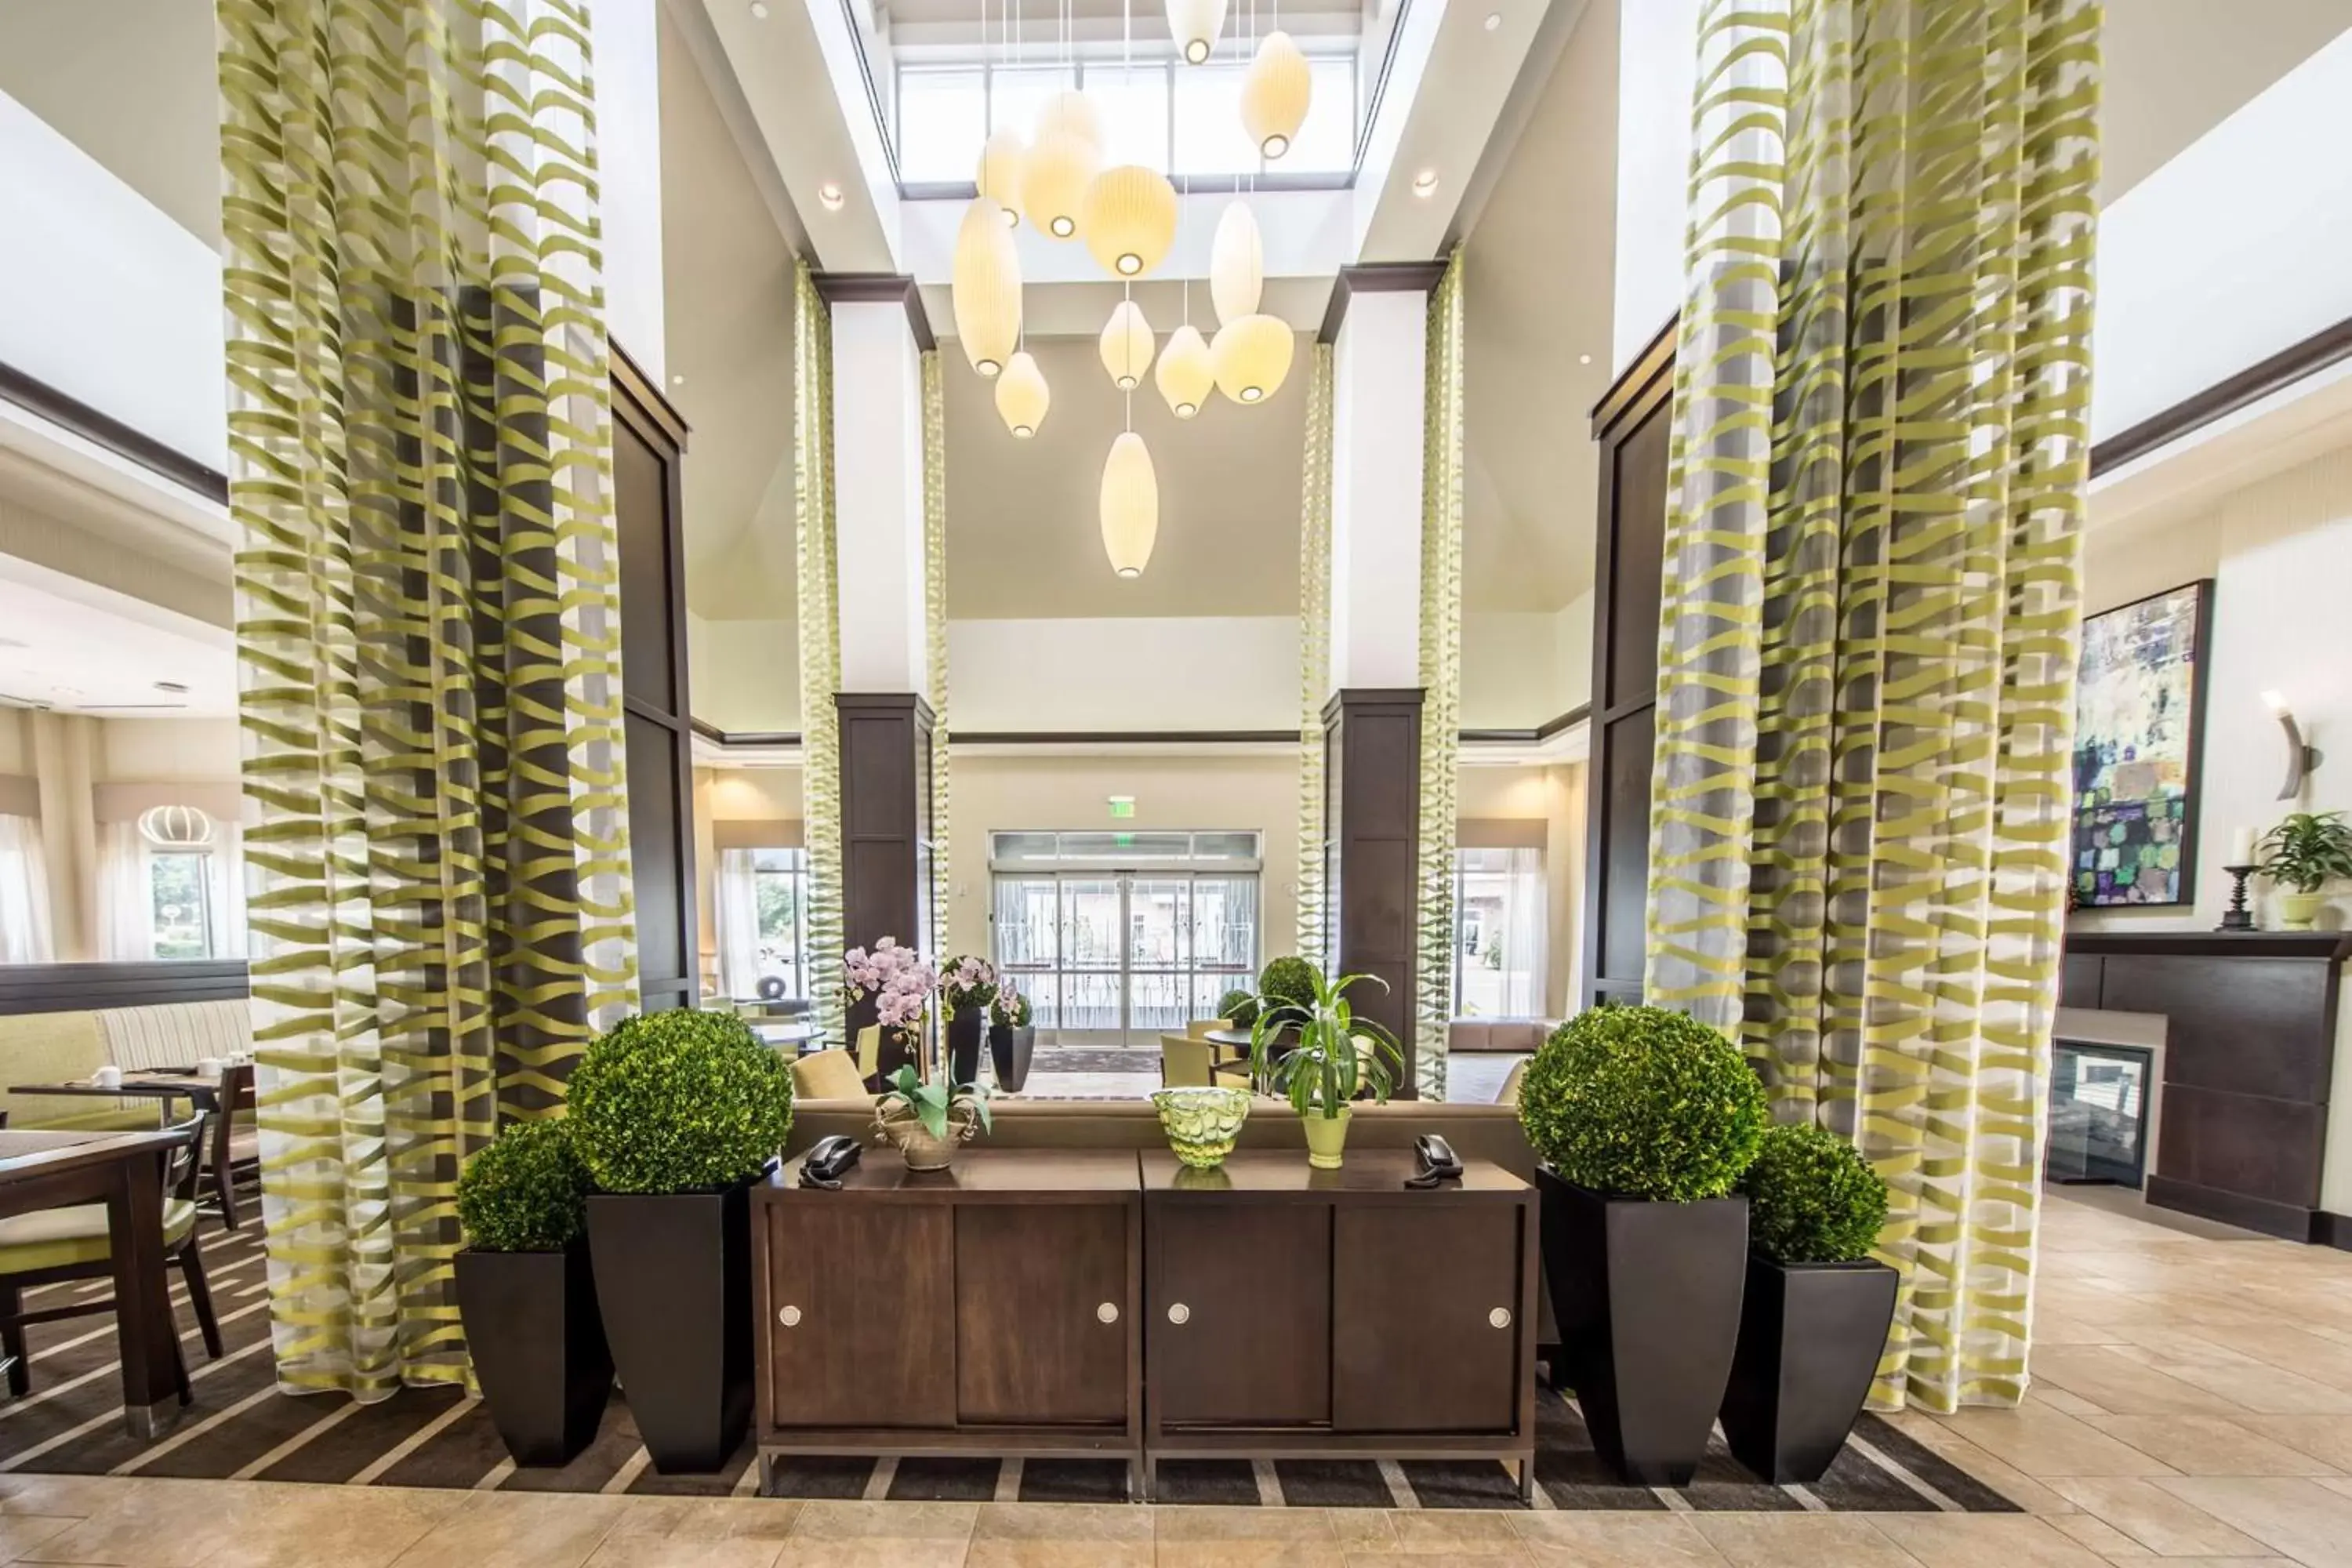 Lobby or reception in Hilton Garden Inn Raleigh Cary